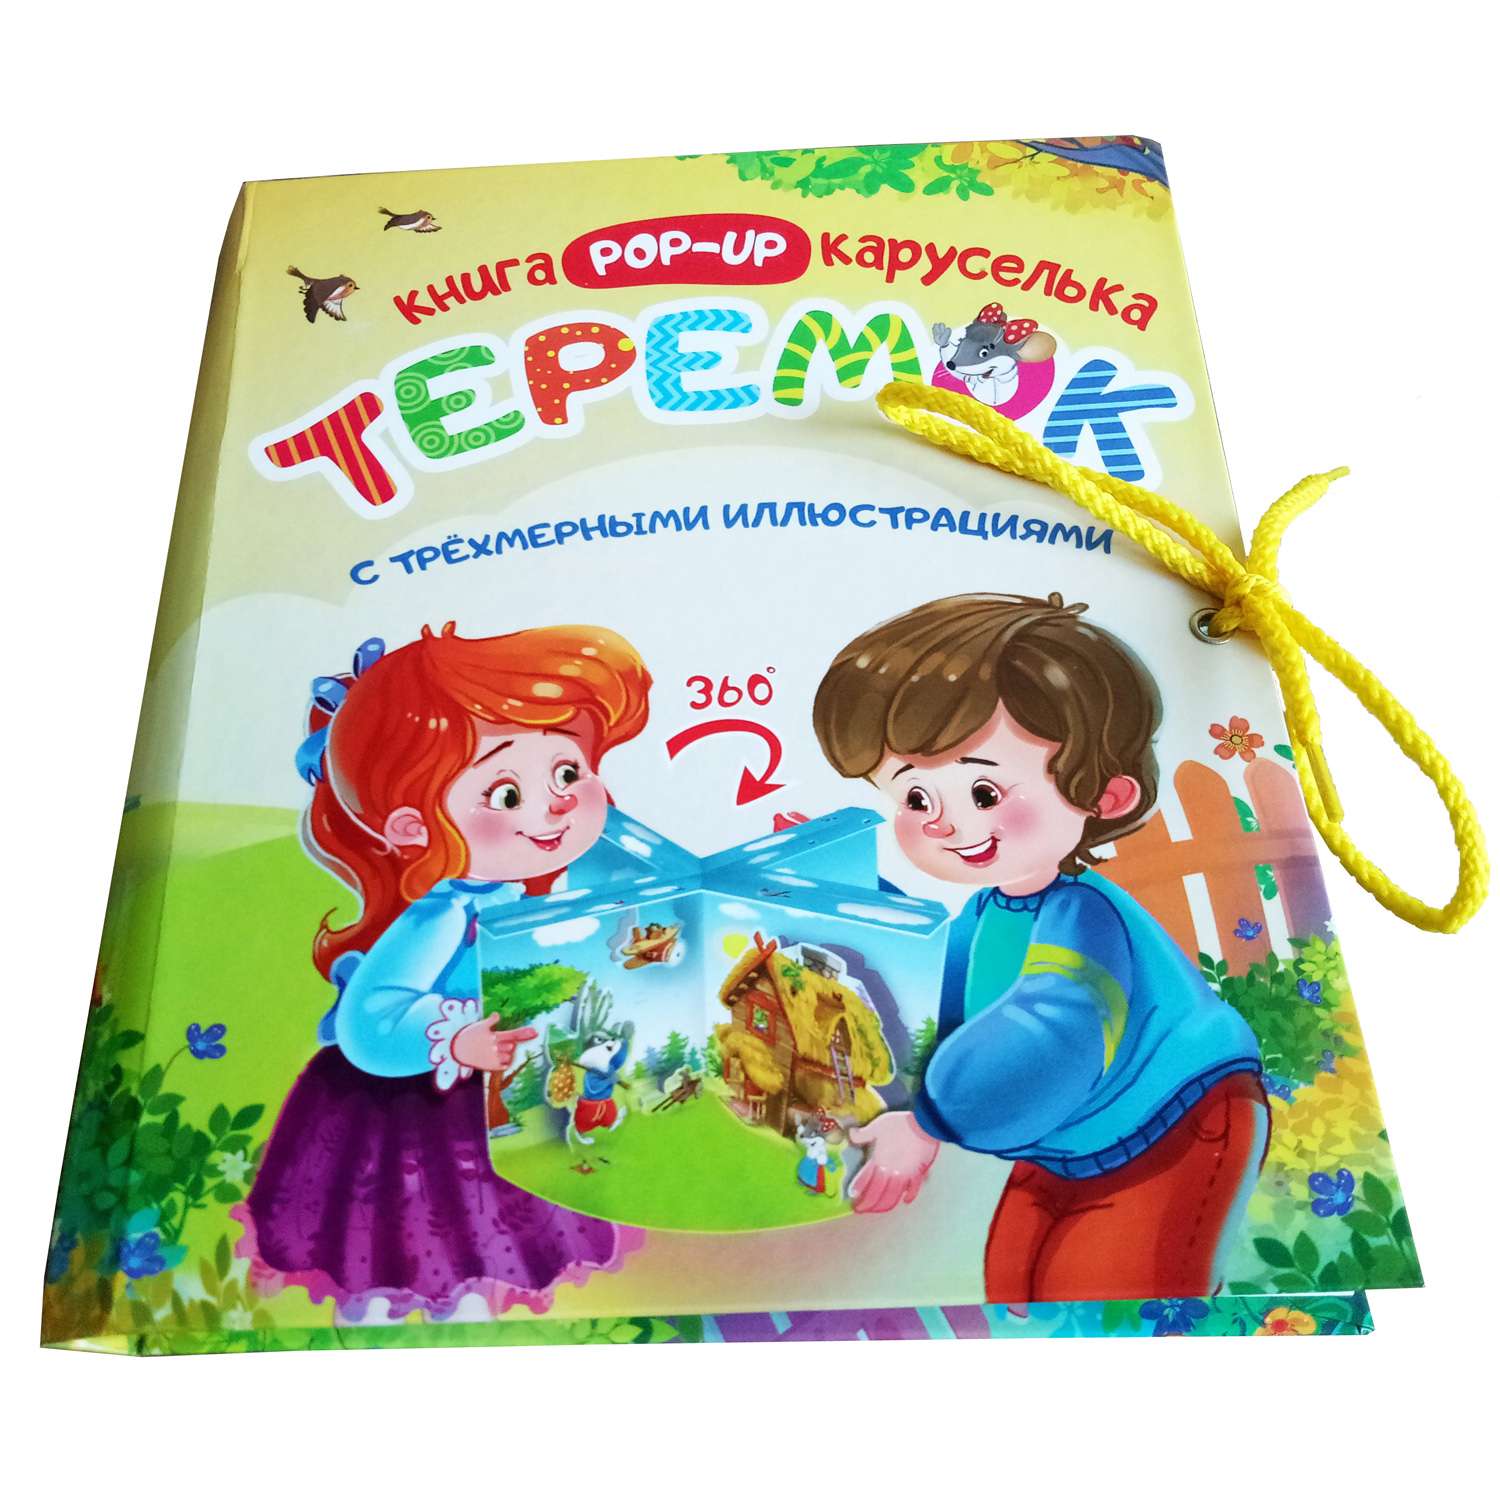 Книга-карусель Учитель Теремок с трёхмерными иллюстрациями - фото 2